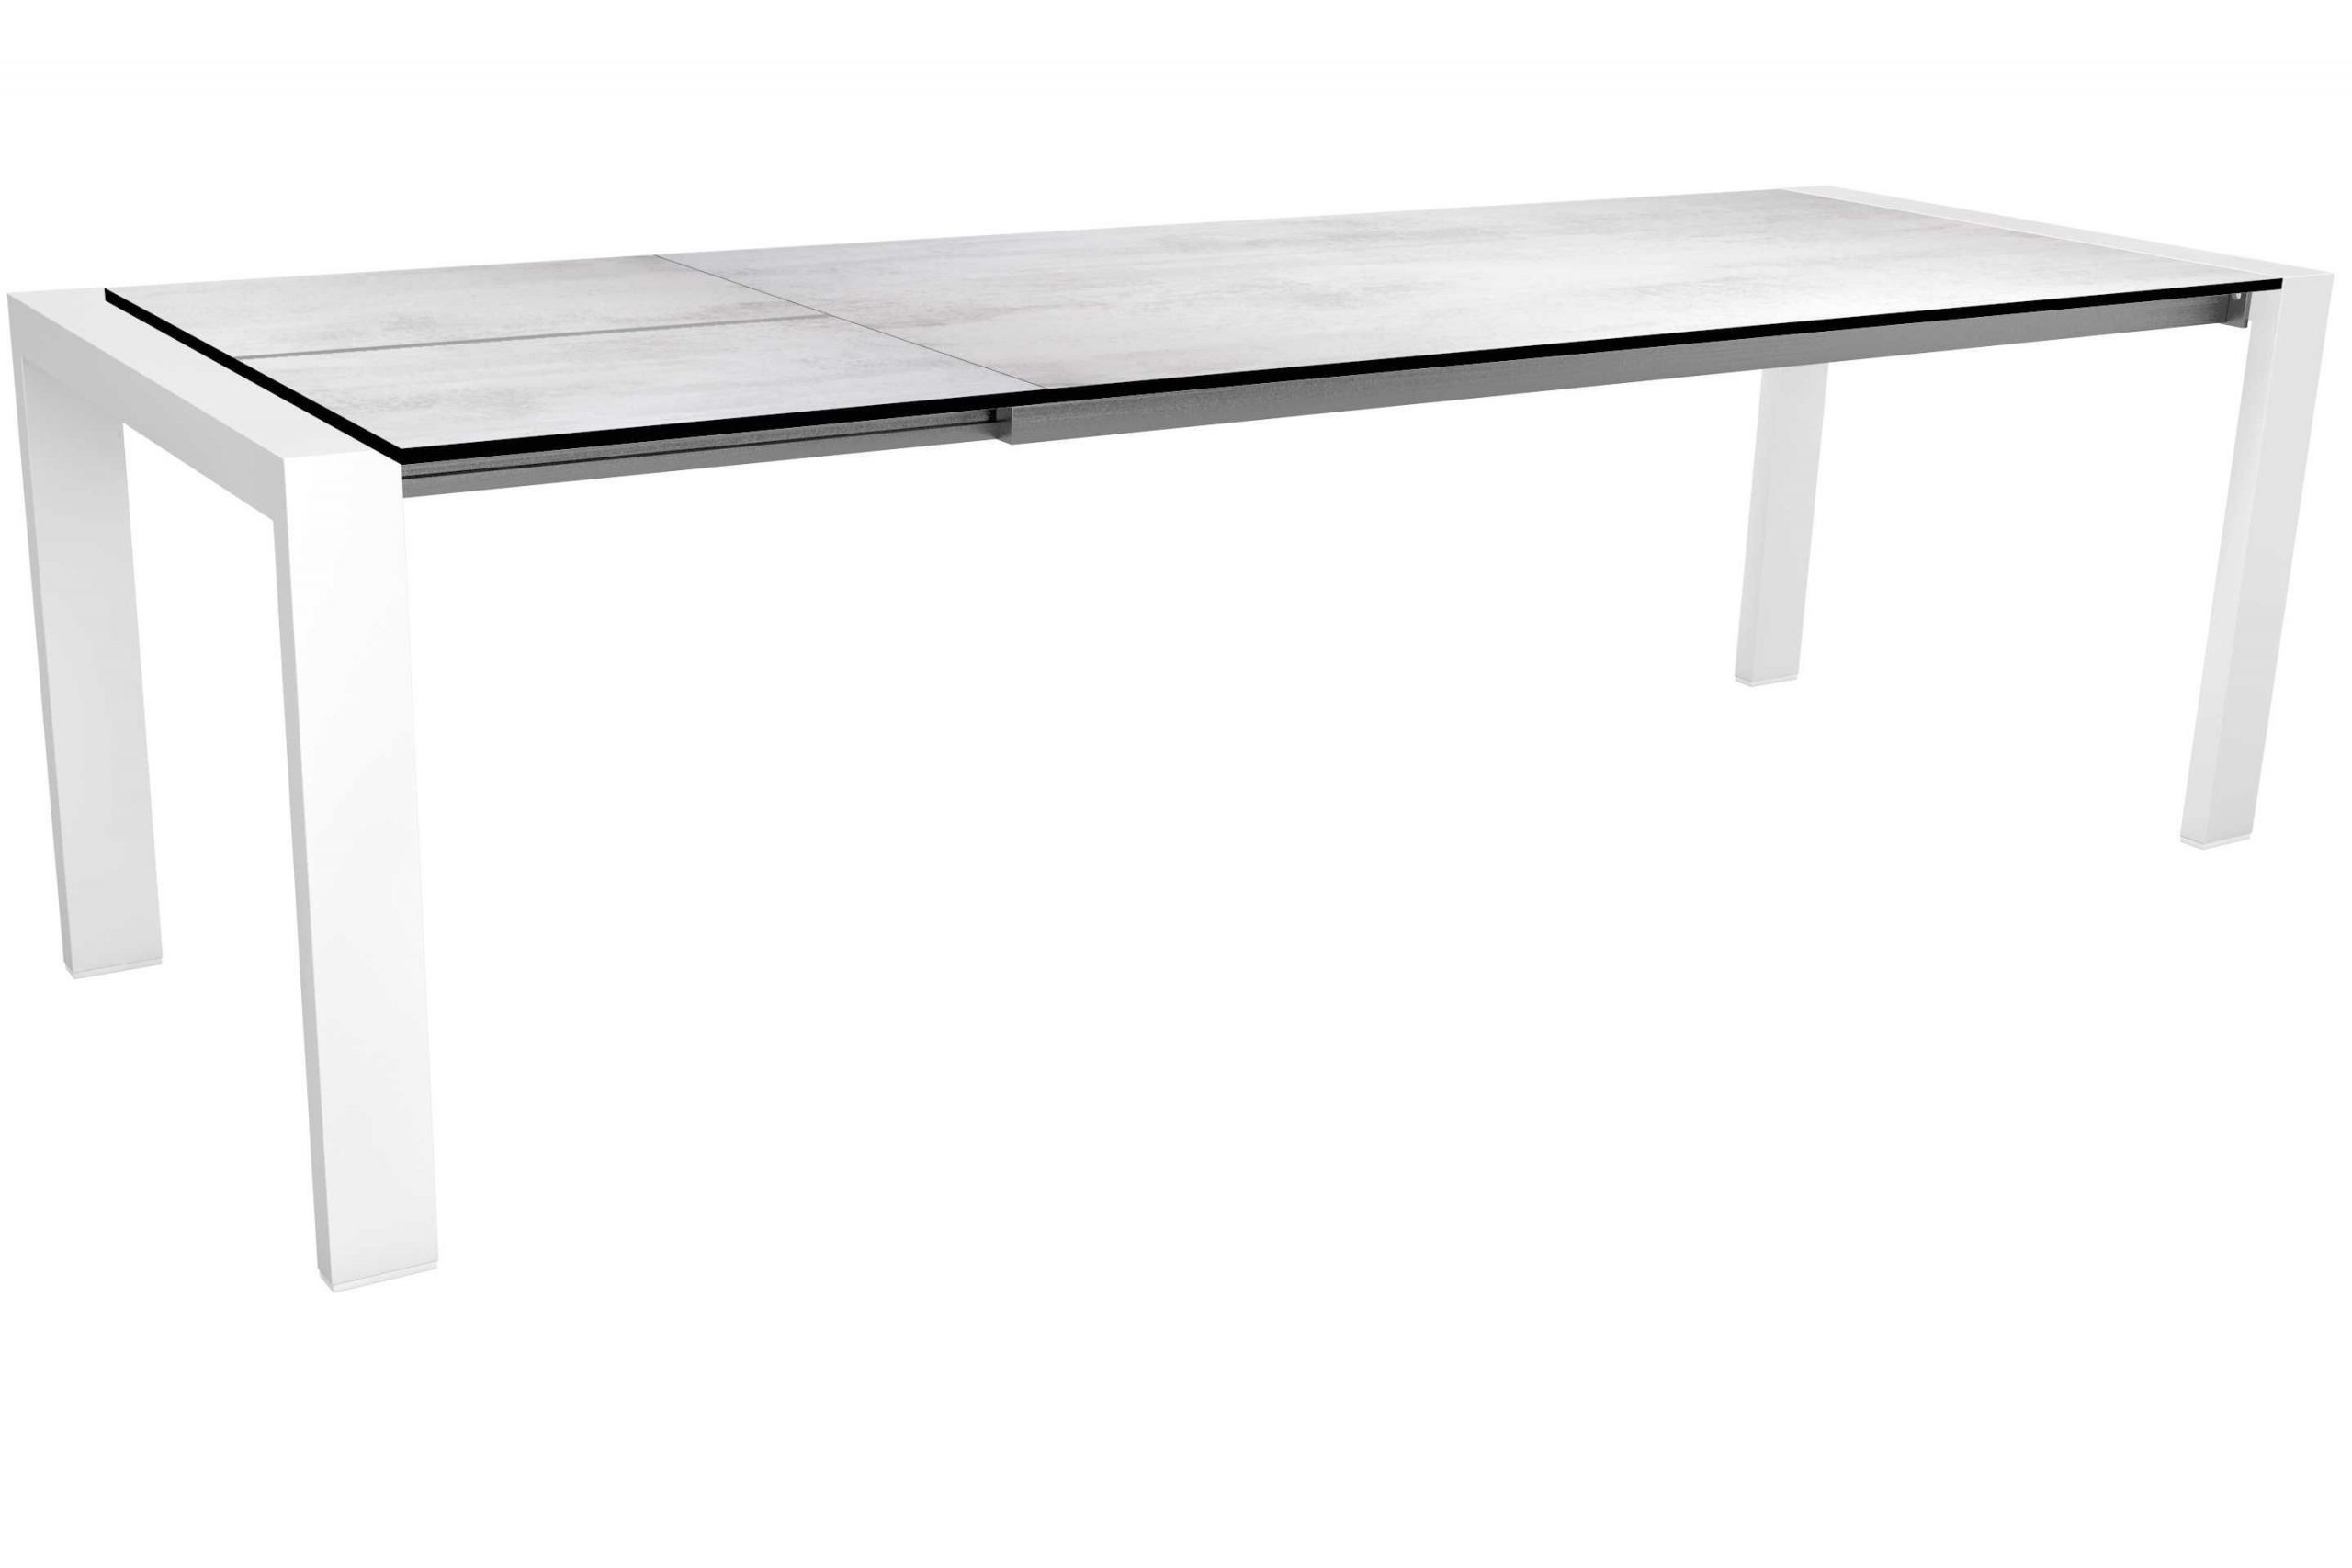 Gartentisch Edelstahl Einzigartig Tisch Mit Tischplatte Silverstar Sahara